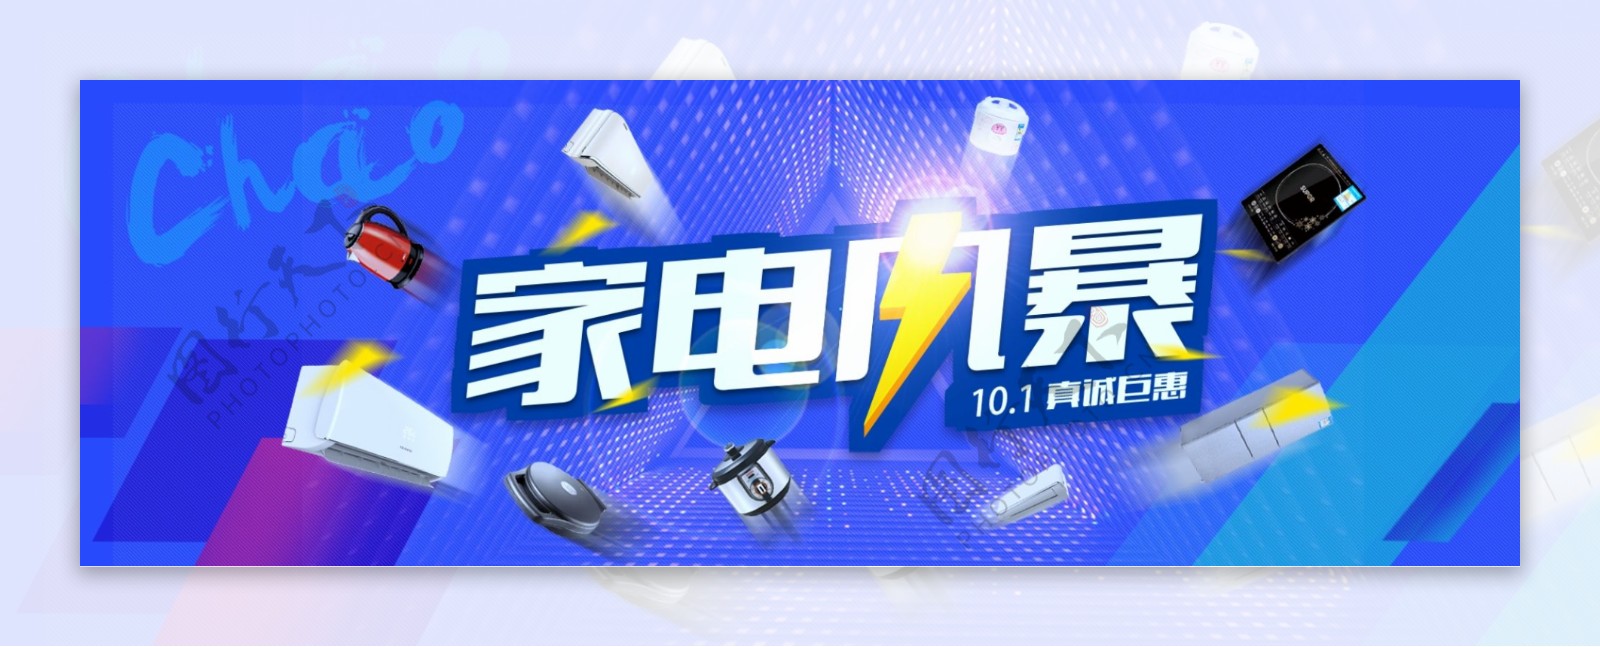 淘宝天猫电商电器城焕新季数码家电炫酷海报banner模板设计